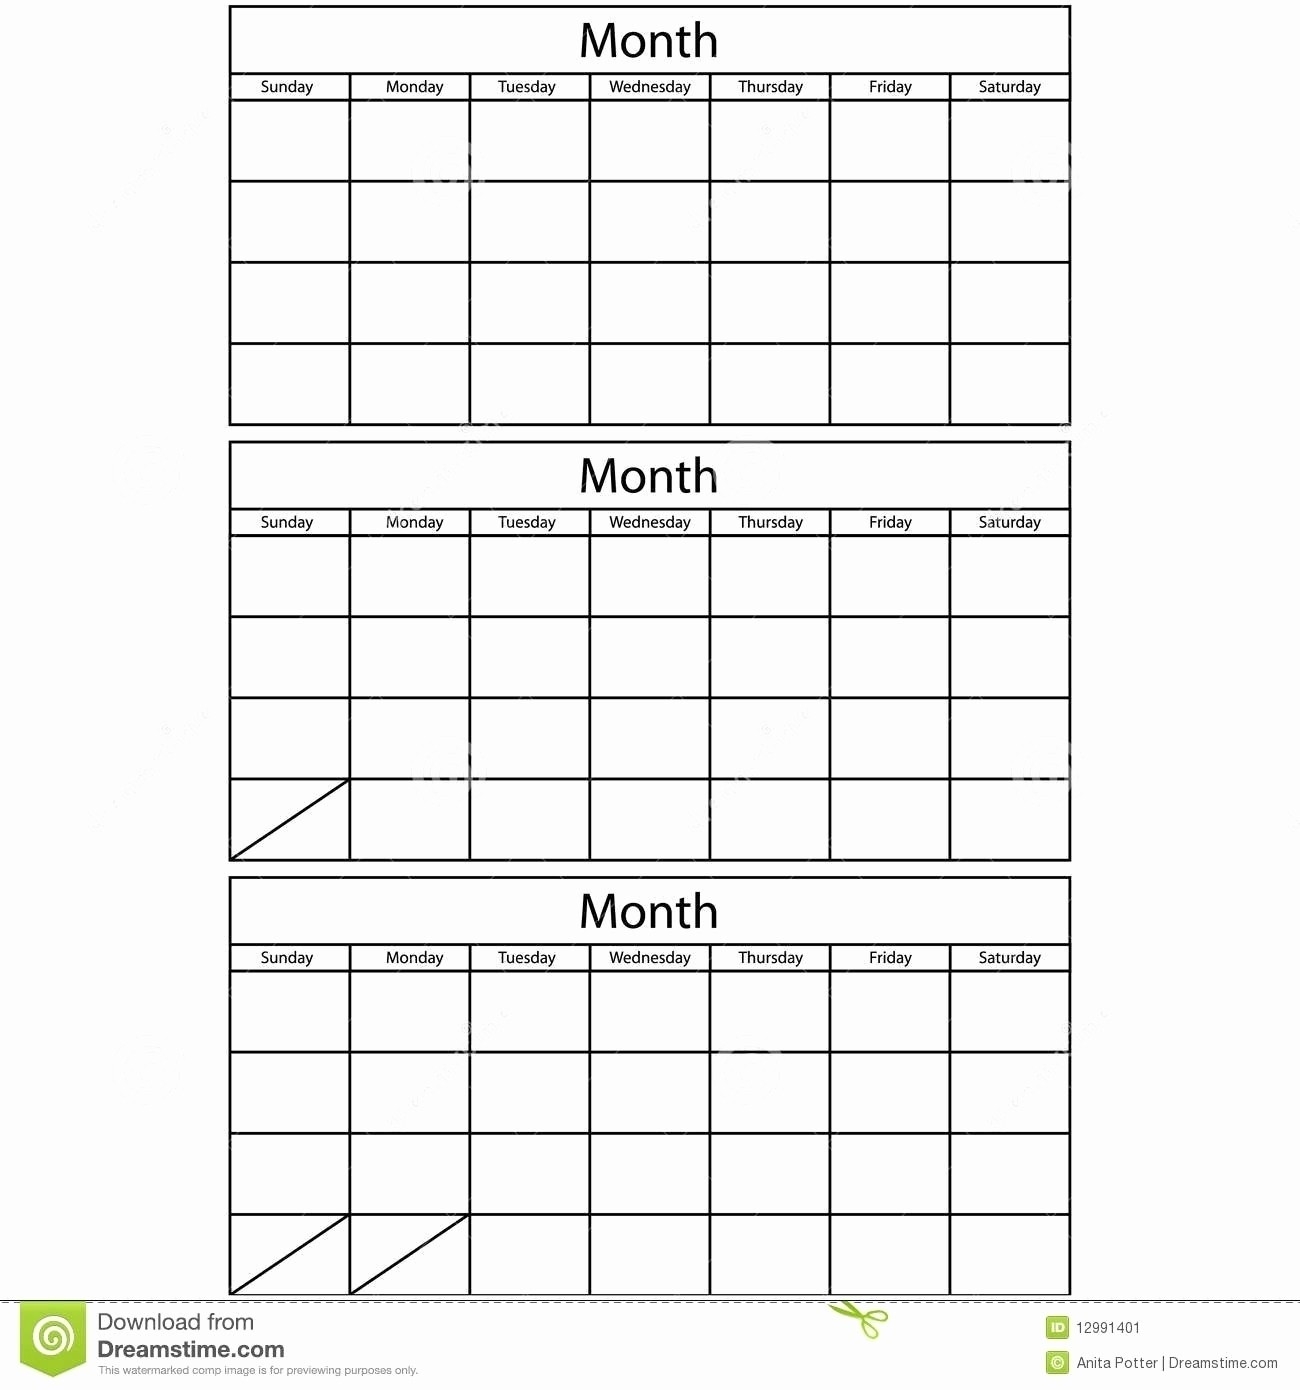 Free 3 Month Calendar Templates - Calendar Inspiration Design-3 Month Blank Calendars